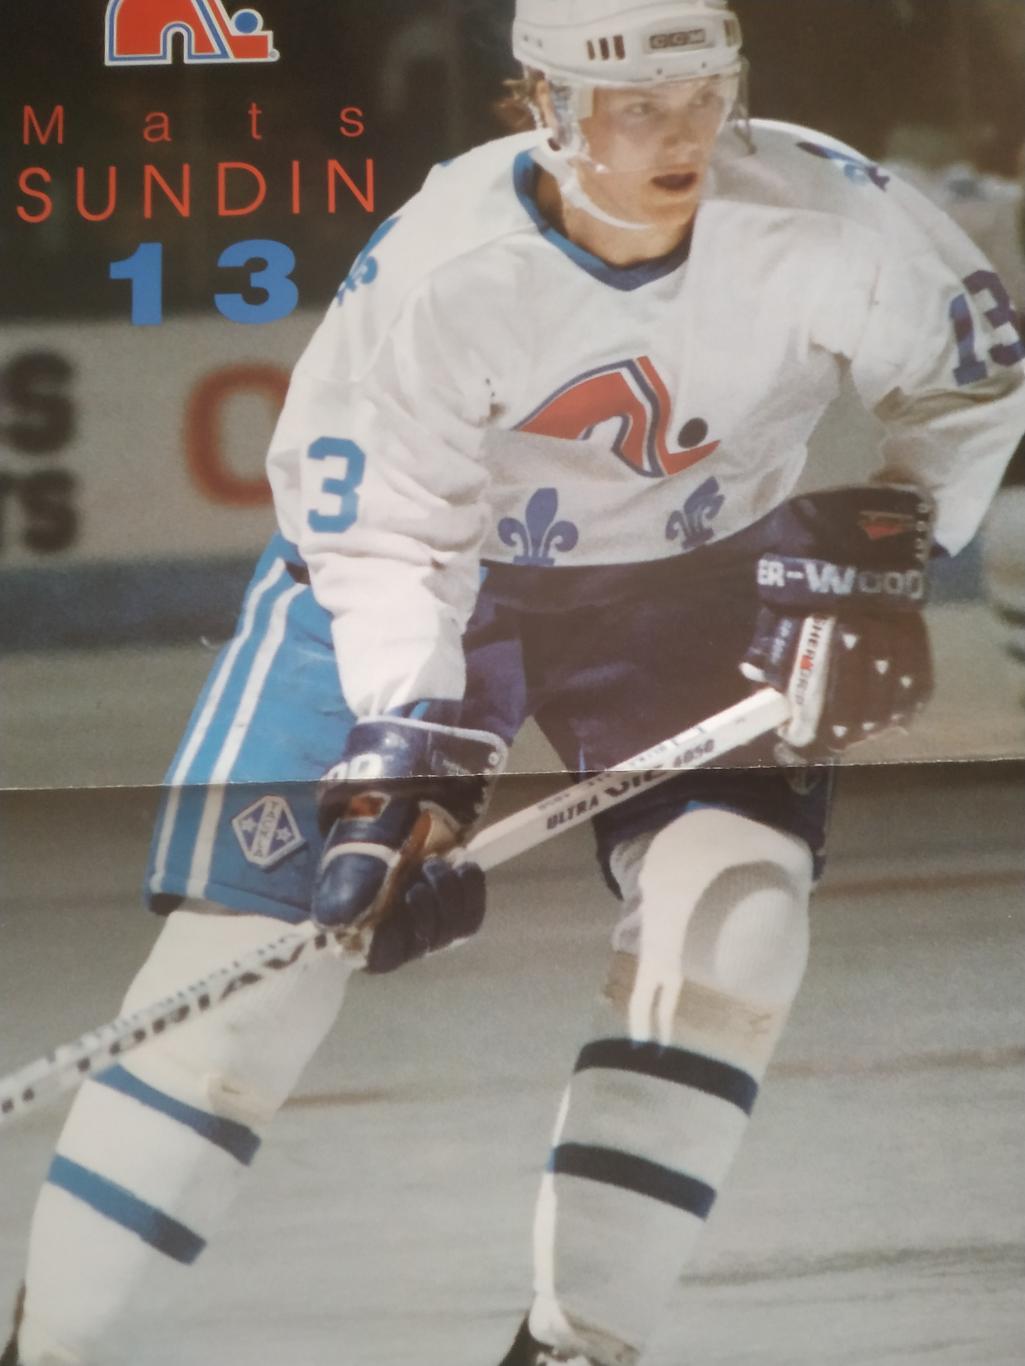 ХОККЕЙ ПОСТЕР НХЛ КВЕБЕК МАТС СУНДИН POSTER NHL QUEBEC MATS SUNDIN #13 А3